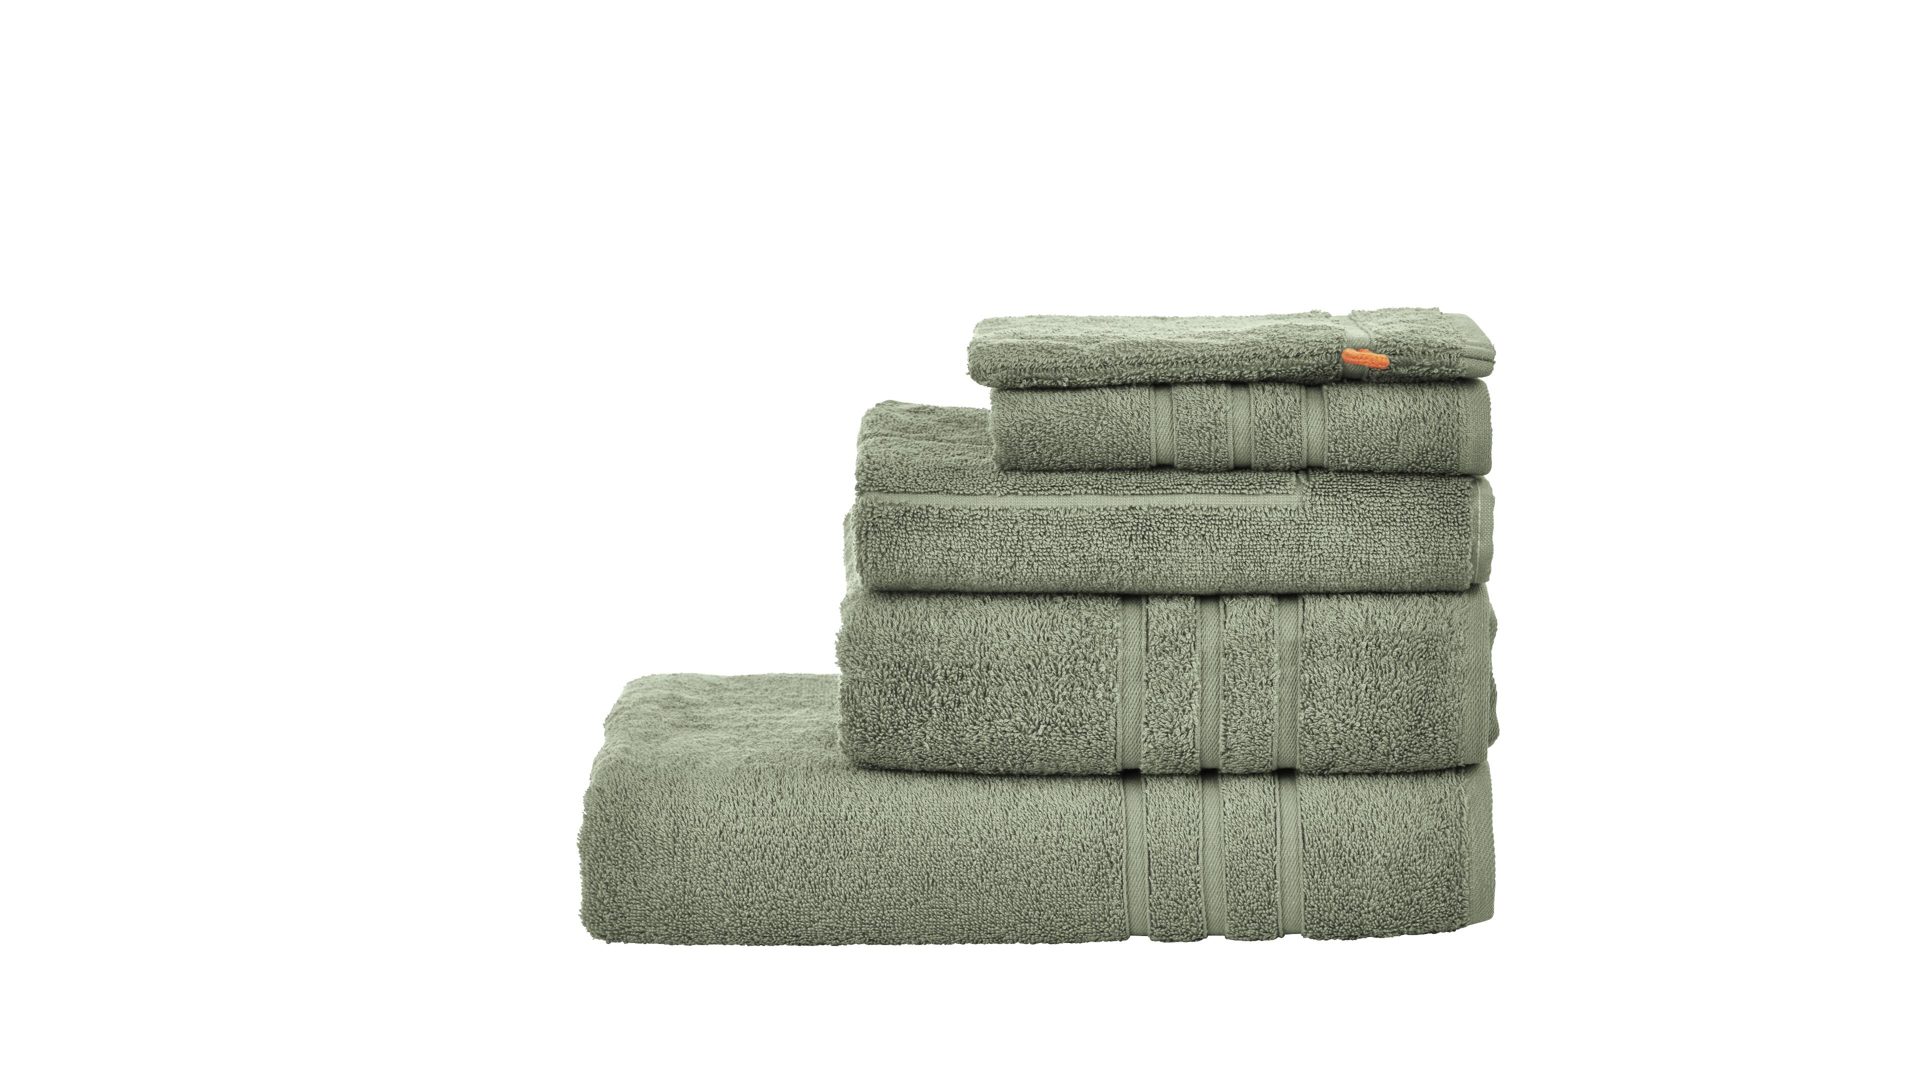 Handtuch-Set Done by karabel home company aus Stoff in Grün Done Handtuch-Set Daily Uni khakifarbene Baumwolle – fünfteilig